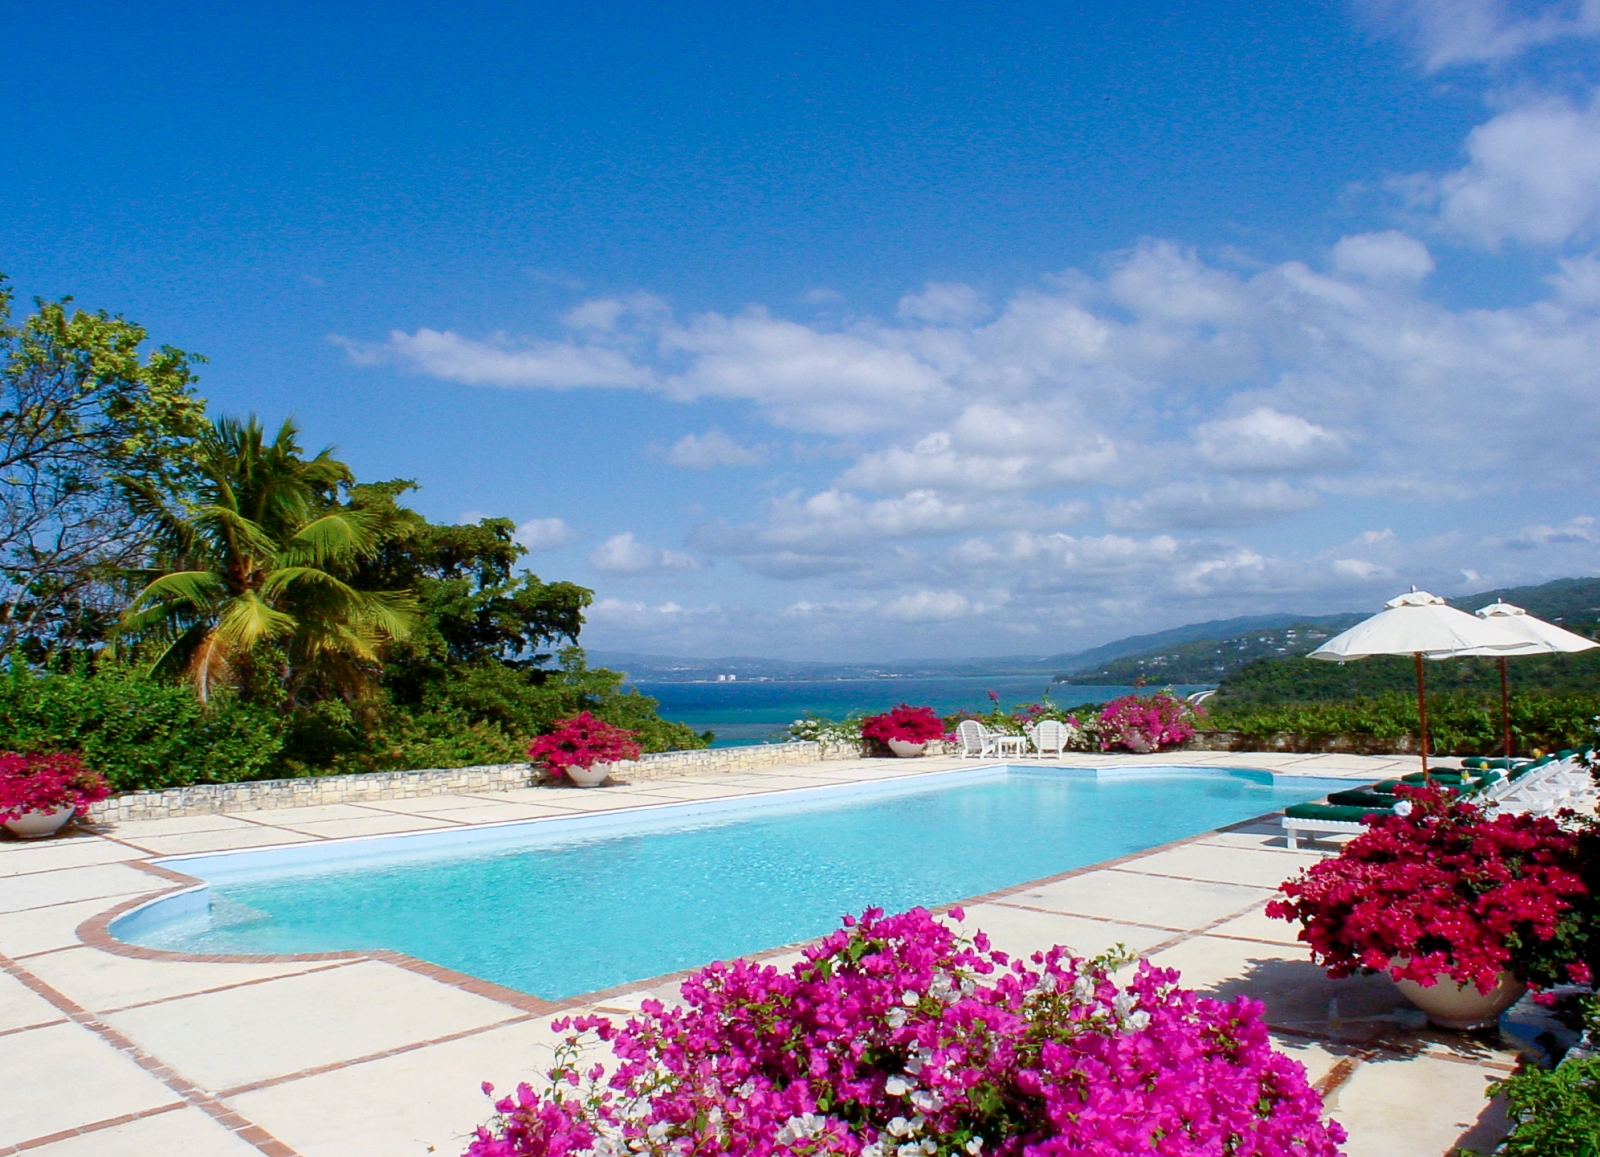 The pool at Longview Manor, Jamaica